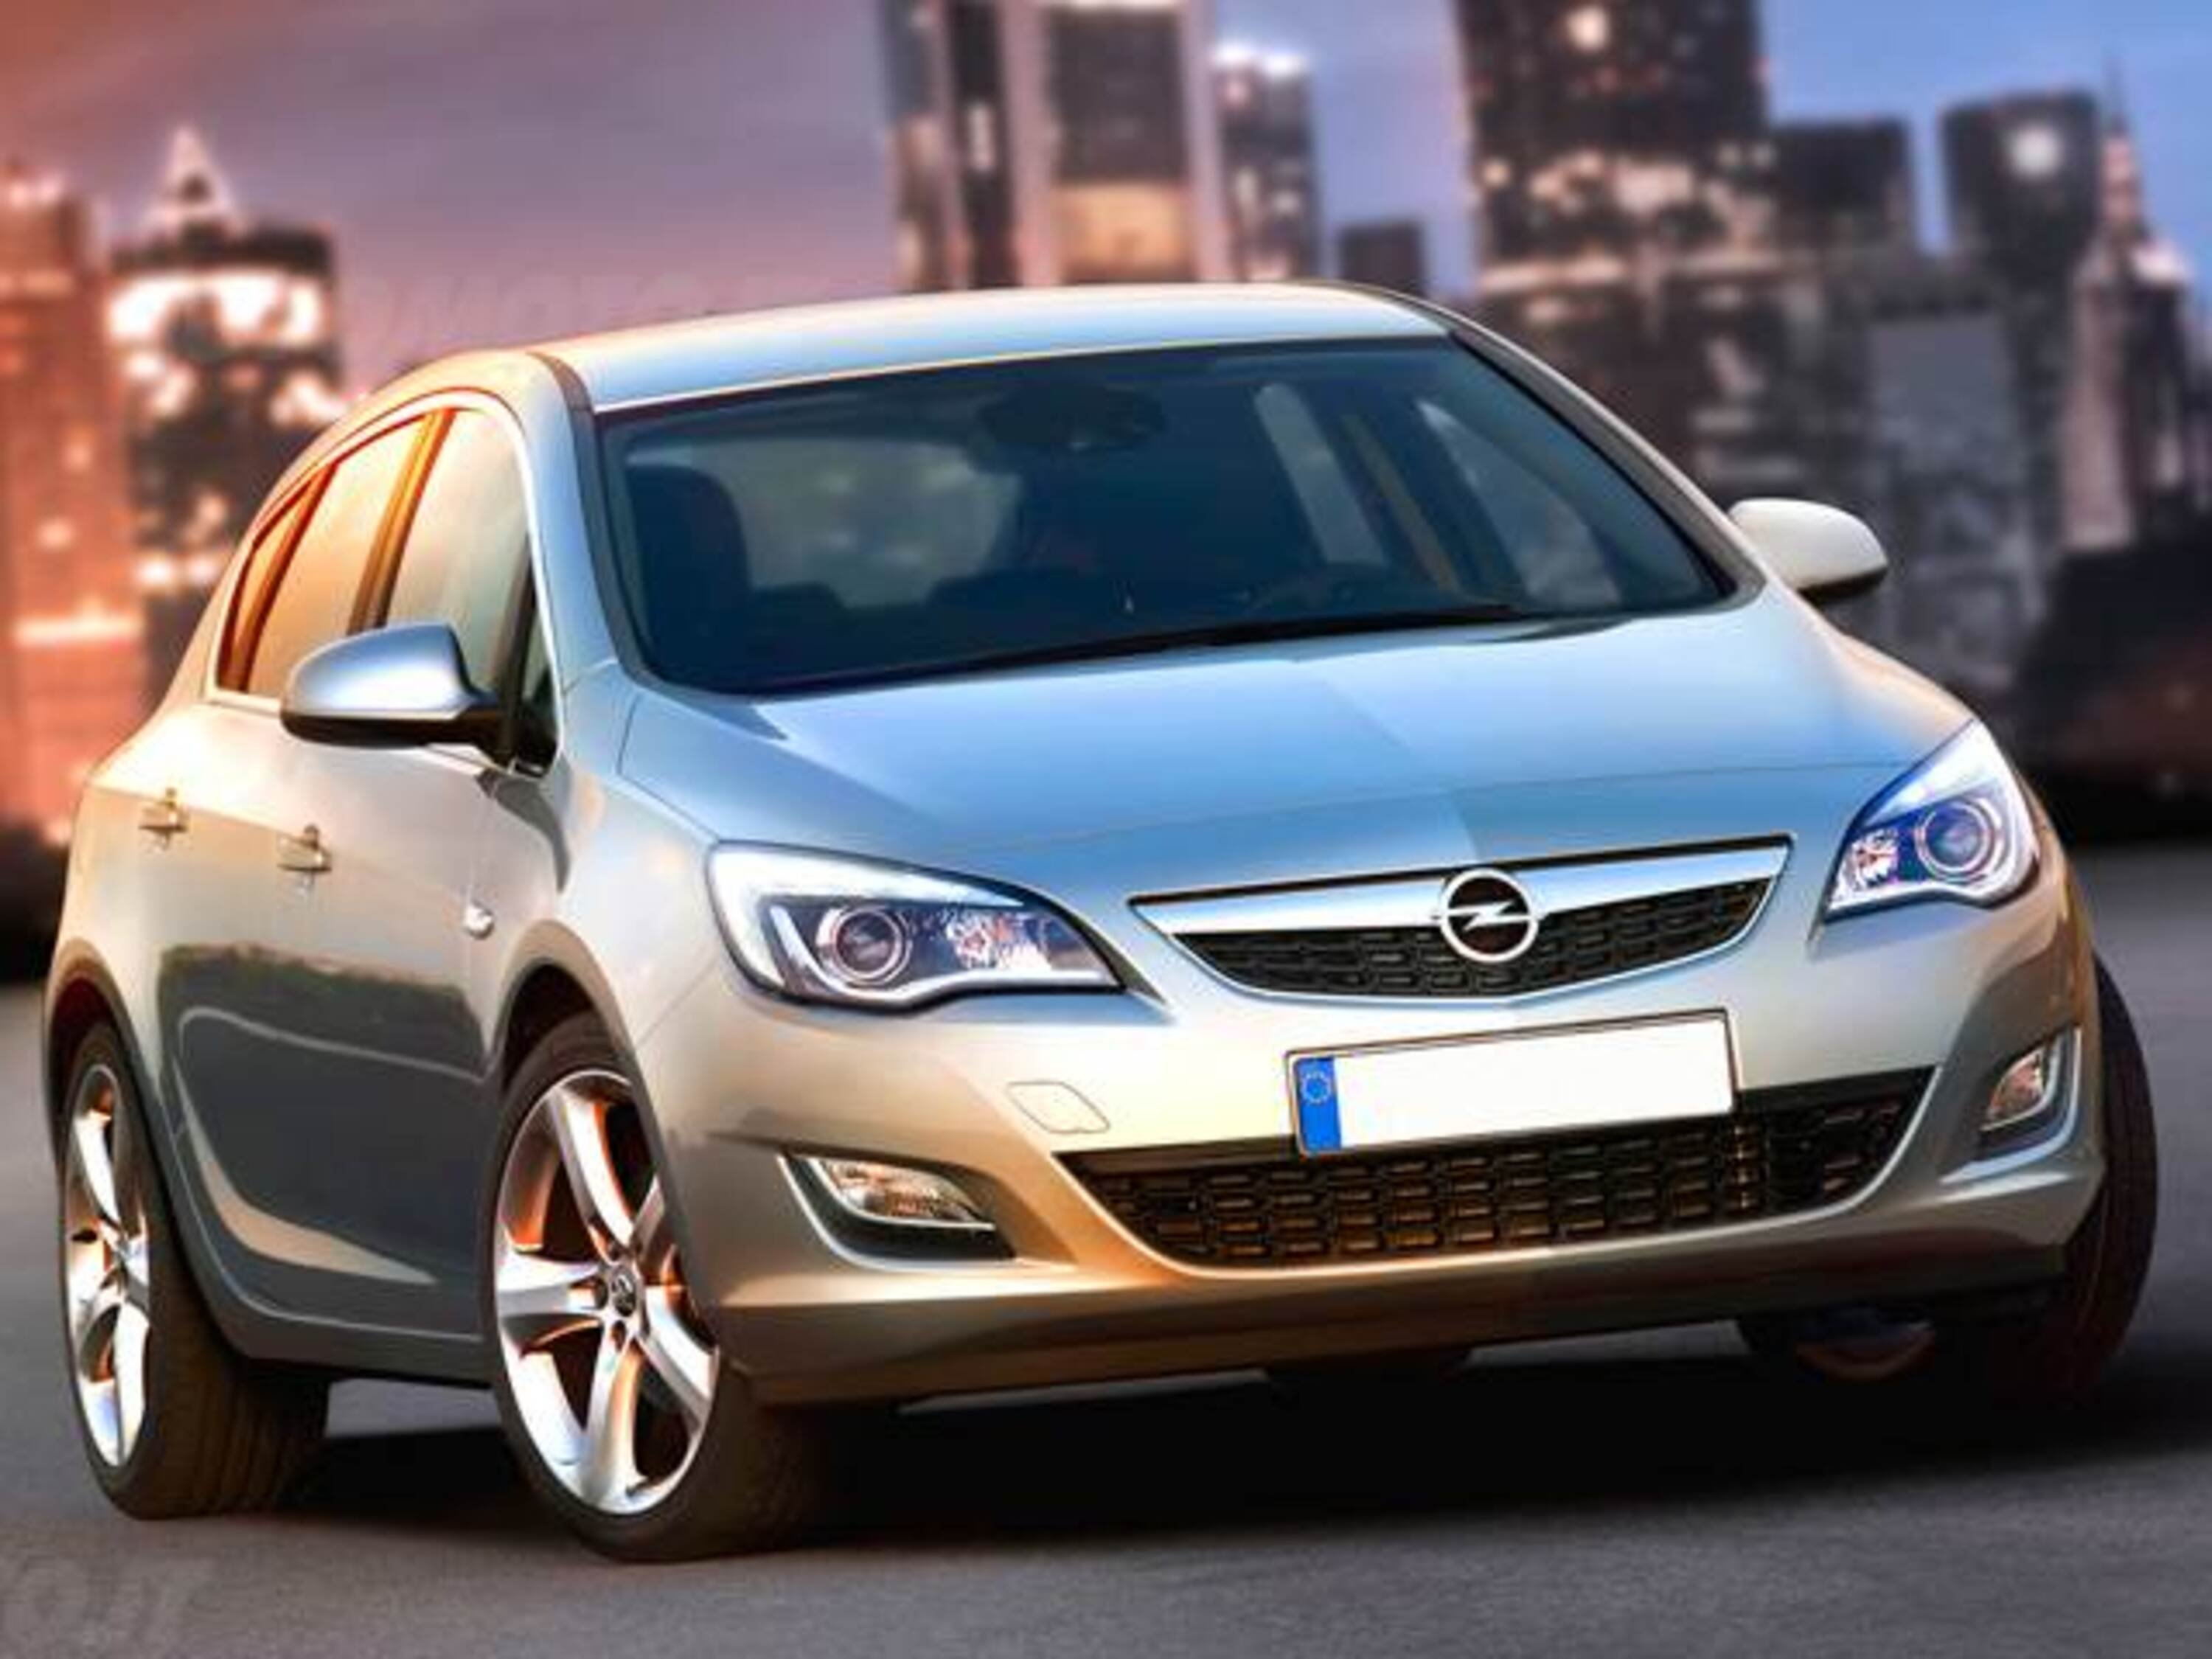 Opel Astra 1.7 CDTI 125CV 5 porte Elective